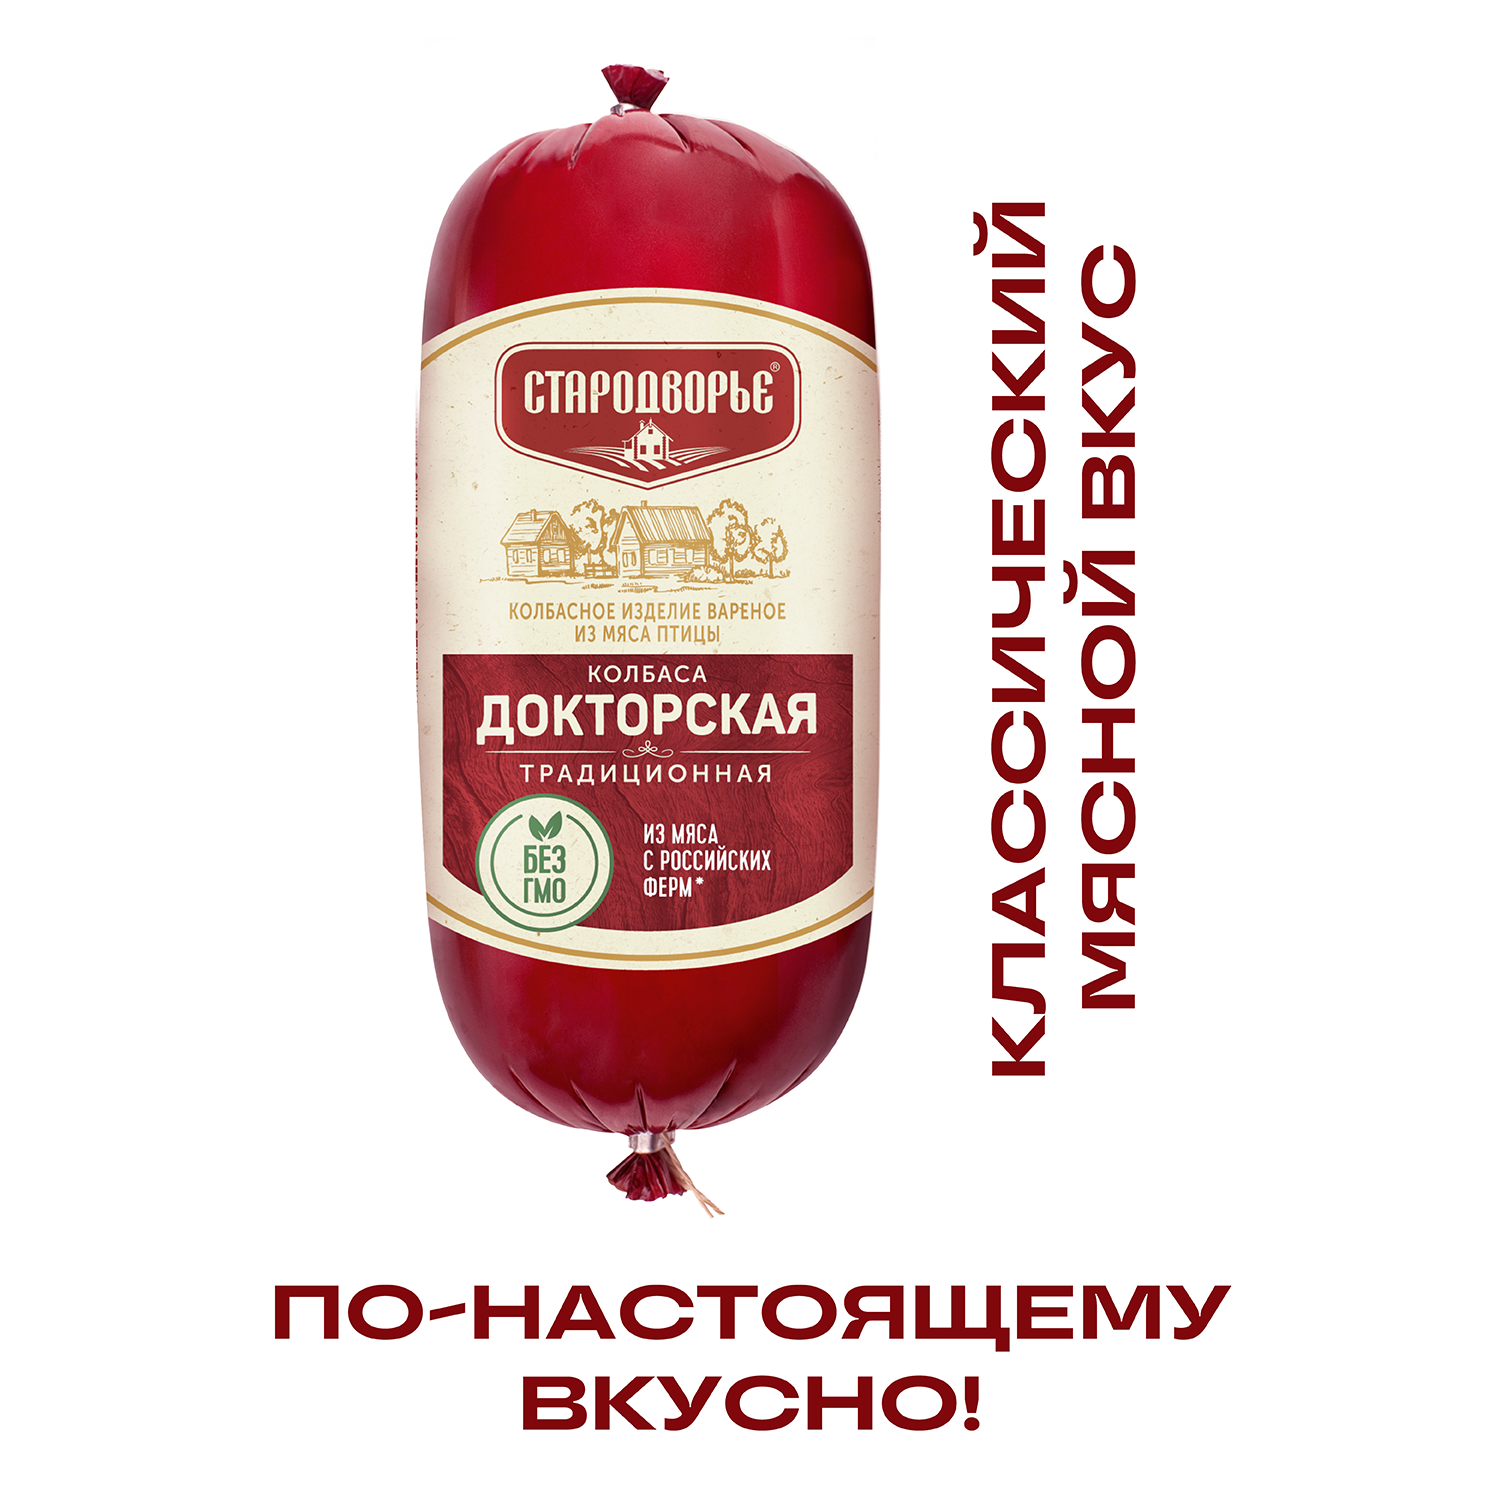 Колбаса Стародворье Докторская стародворская вареная, 500 г